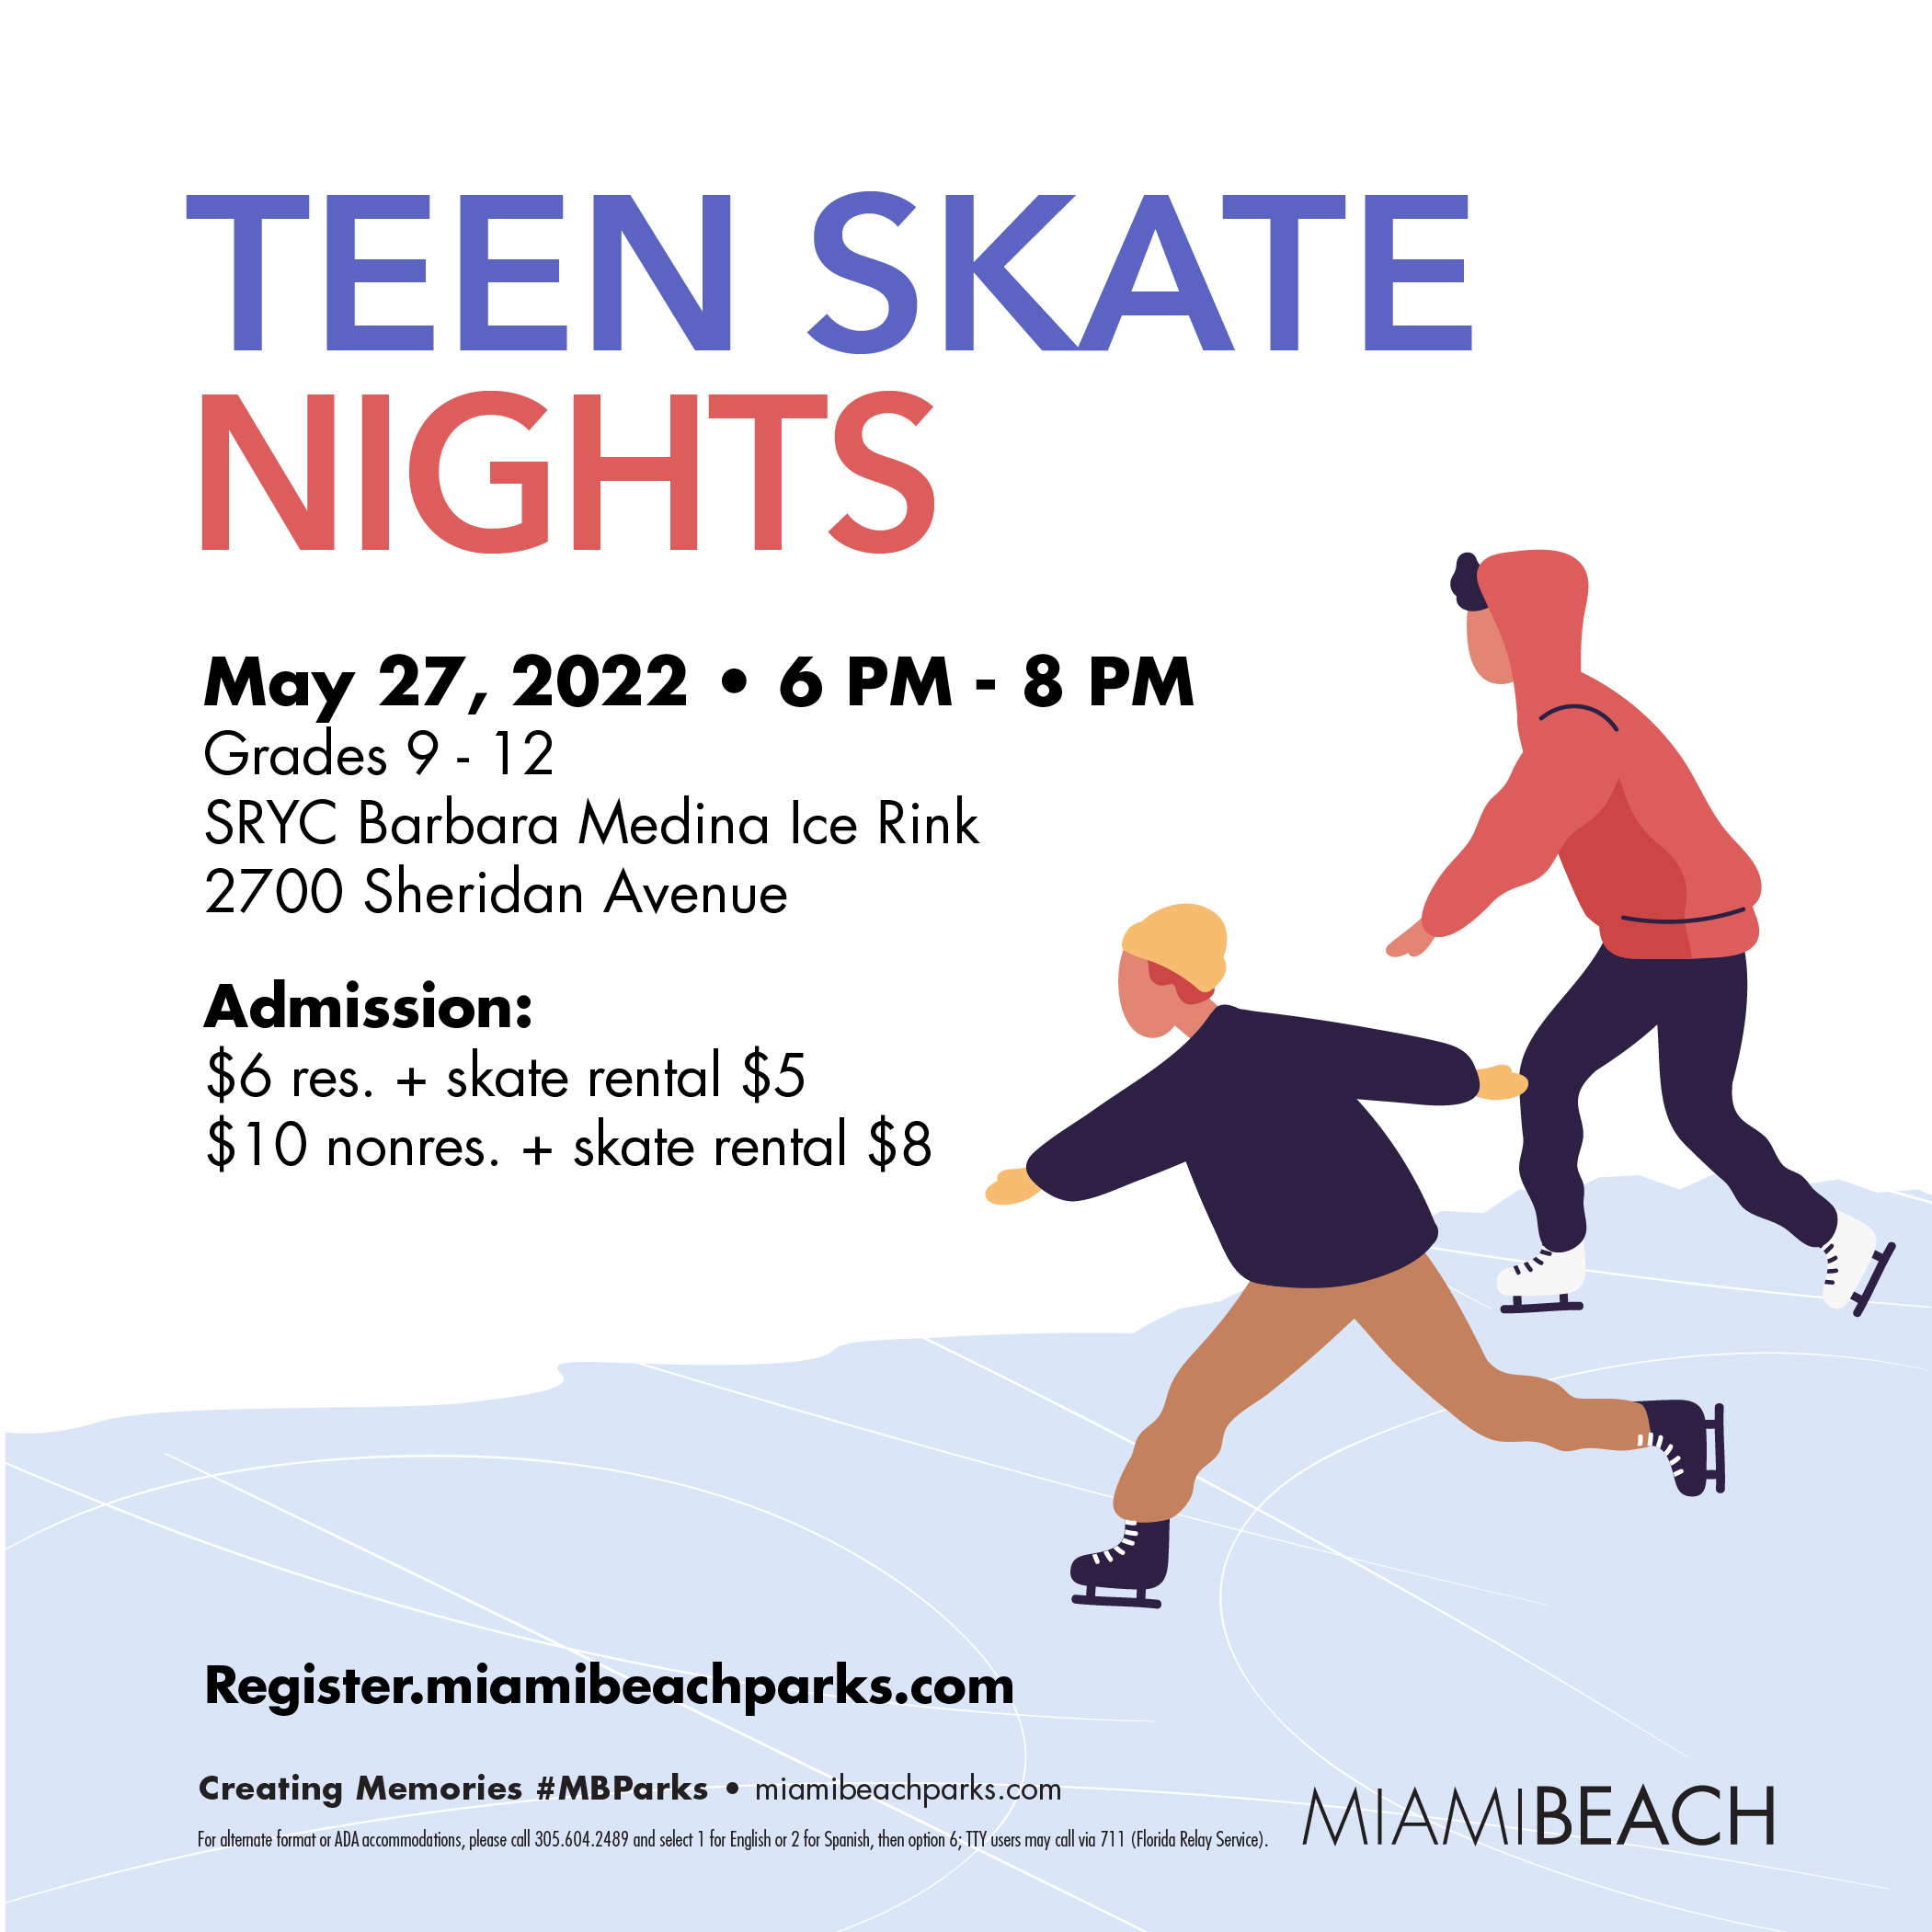 https://www.miamibeachfl.gov/wp-content/uploads/2022/05/Teen-Skate-Nights_May-01-1-1.jpg